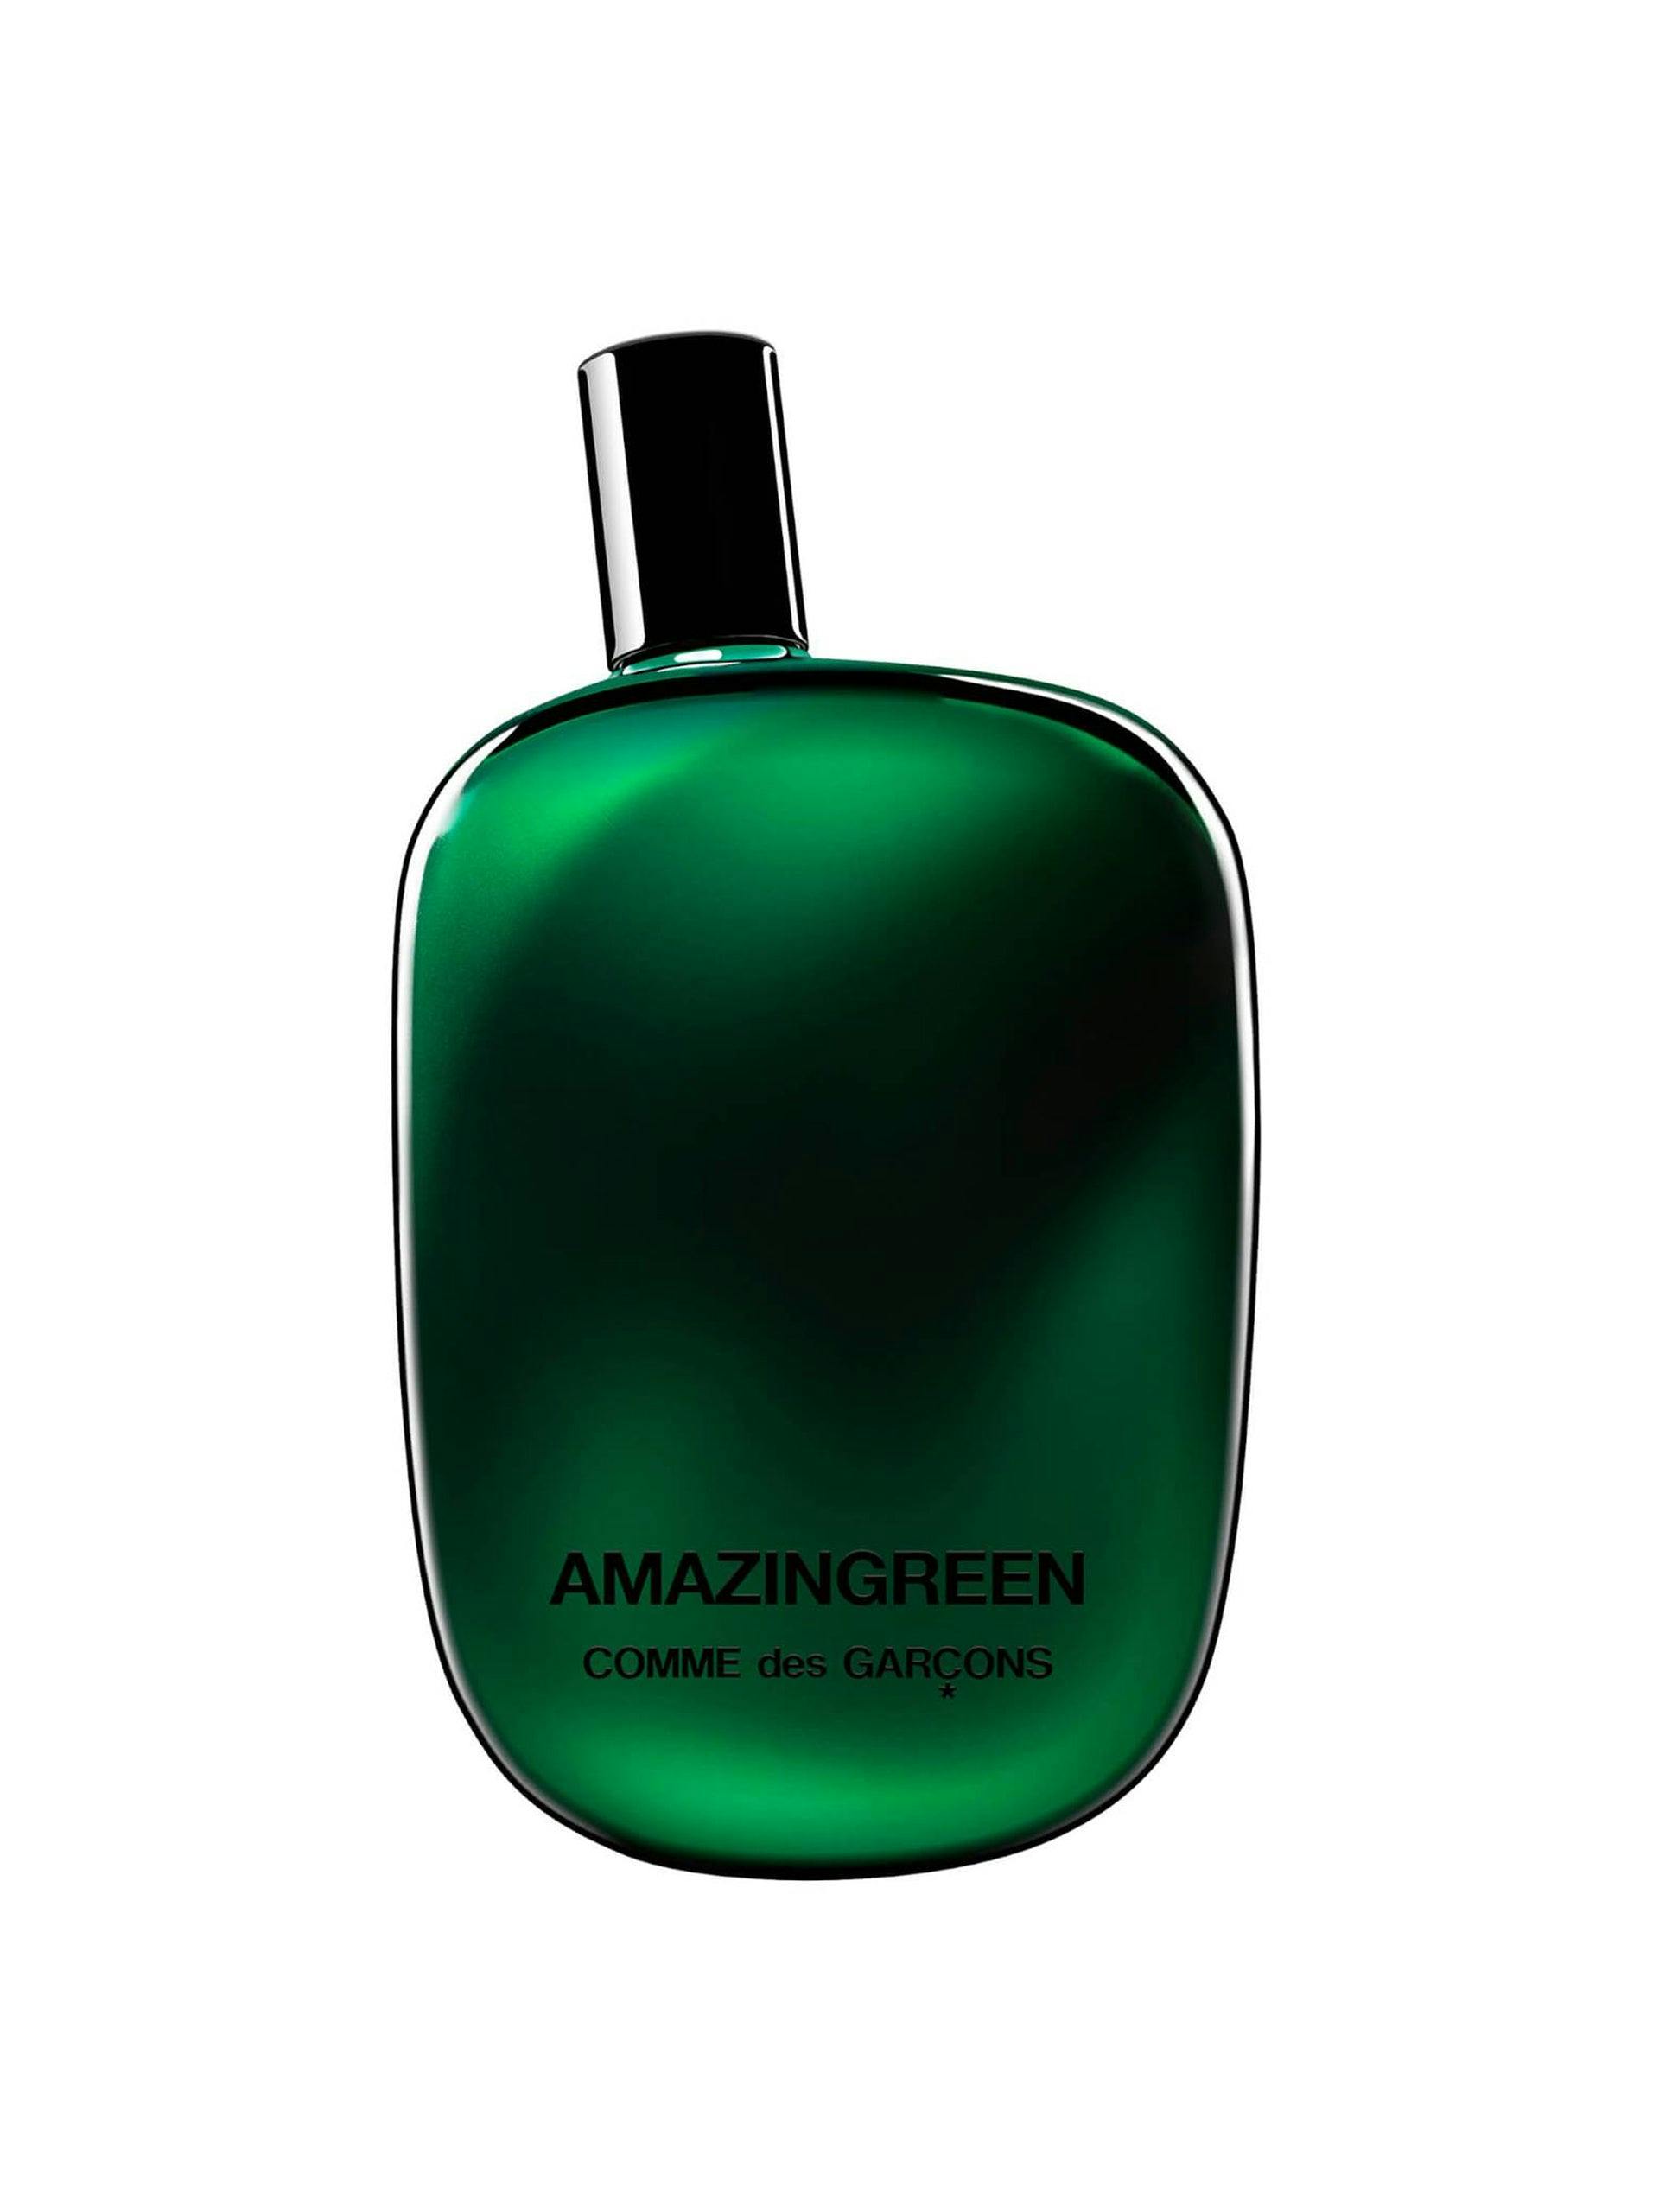 Amazingreen eau de parfum